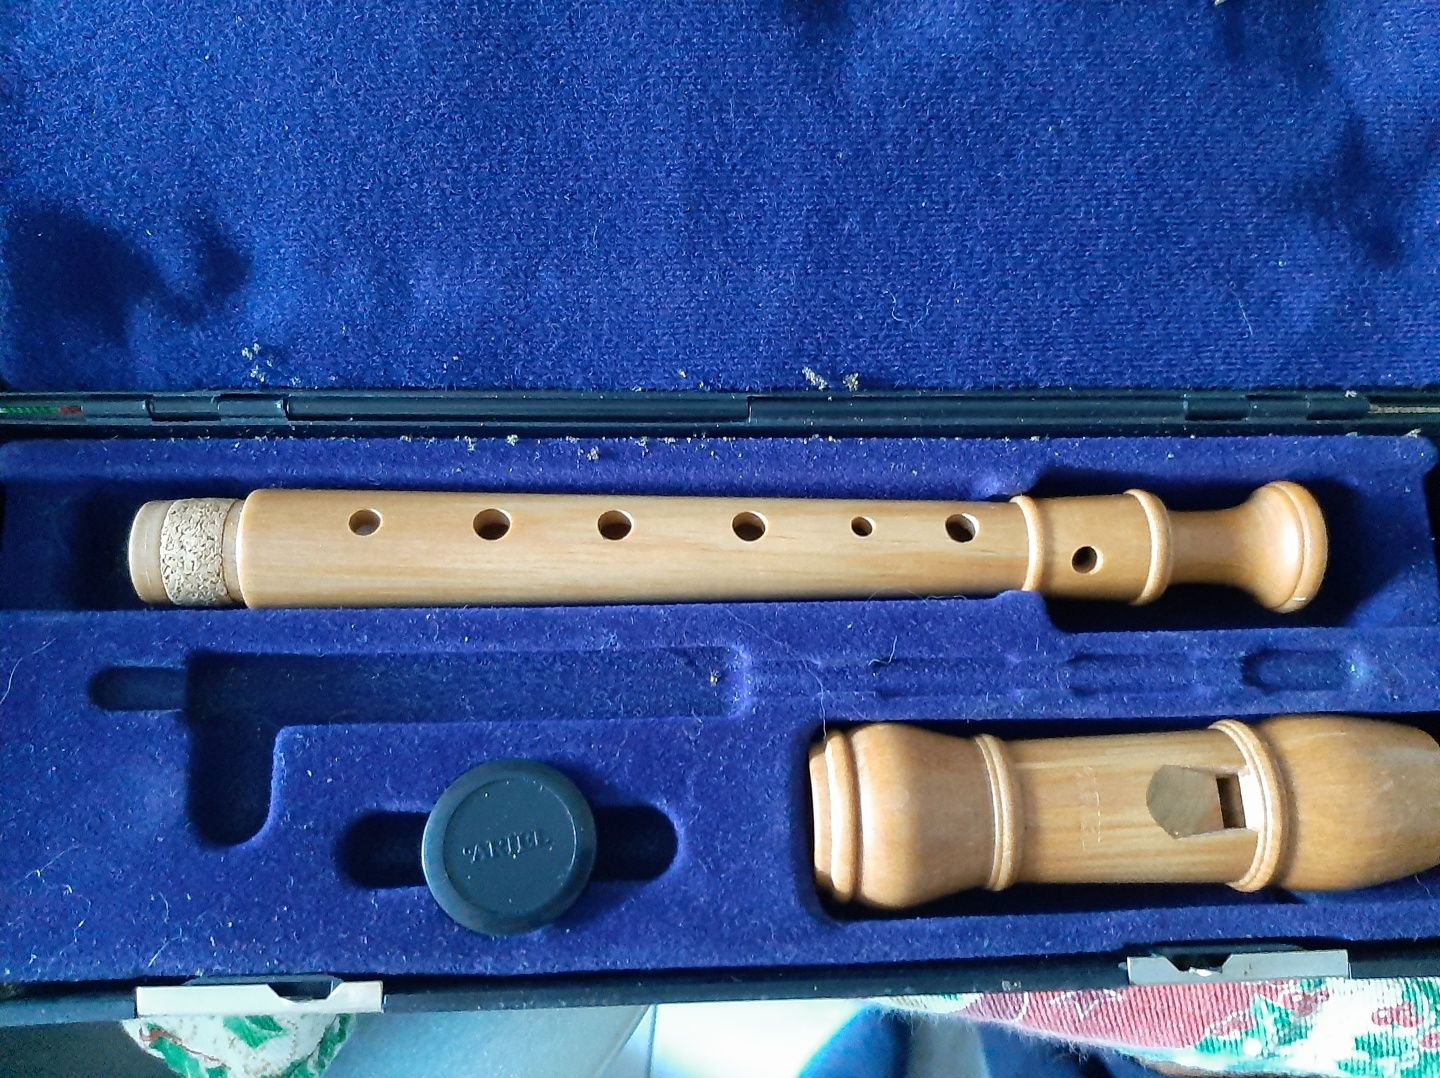 Flauta nova em caixa  com assecorios